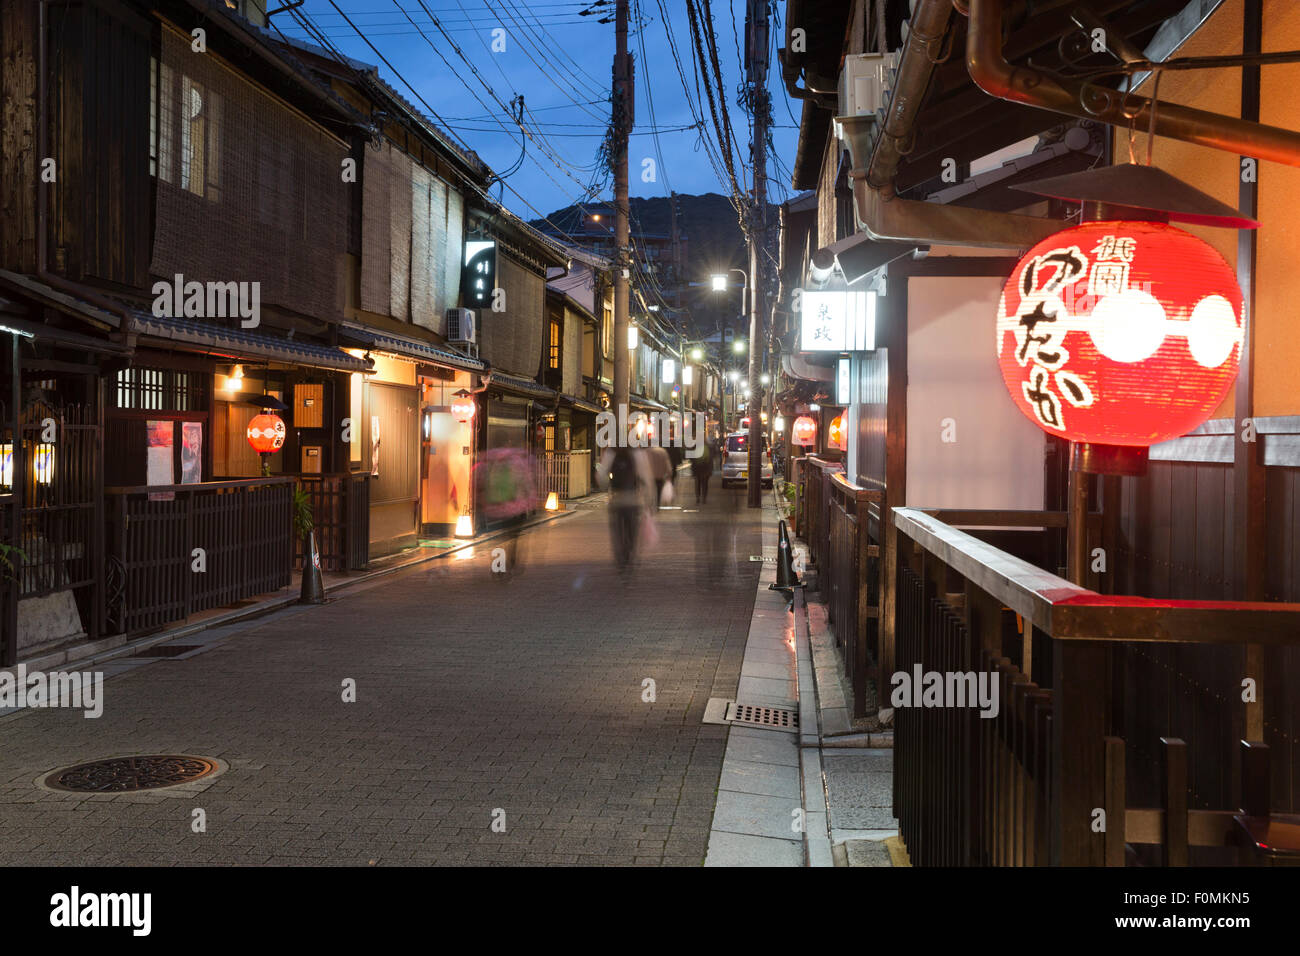 Casas de madera tradicional japonesa en la noche, el distrito Gion (Geisha zona), Kyoto, Japón, Asia Foto de stock